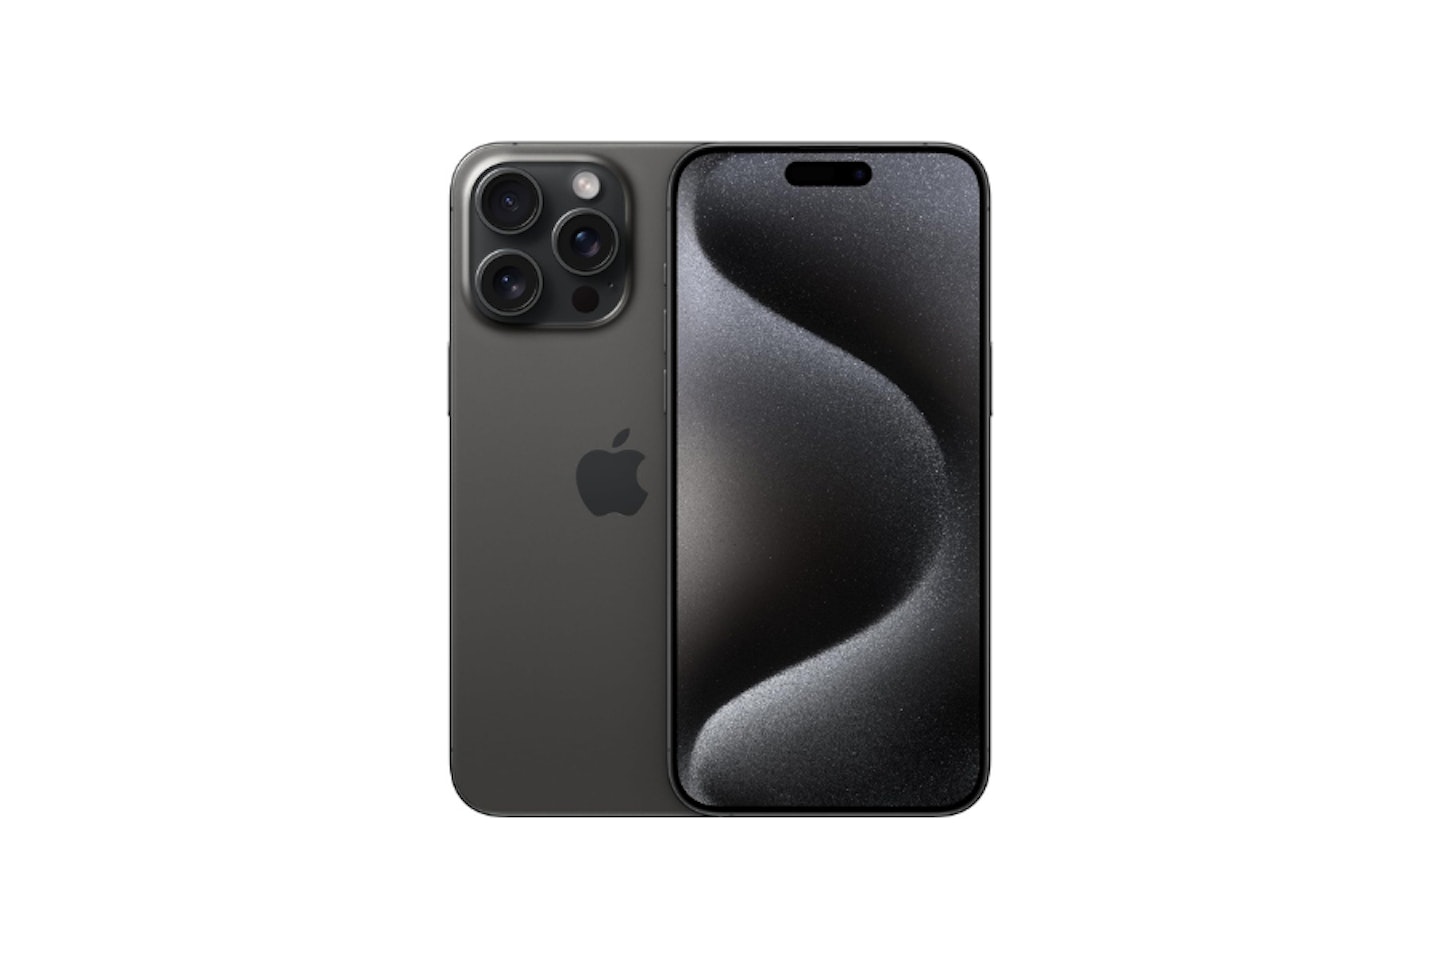 Apple iPhone 15 Pro Max (256 GB) - Black Titanium